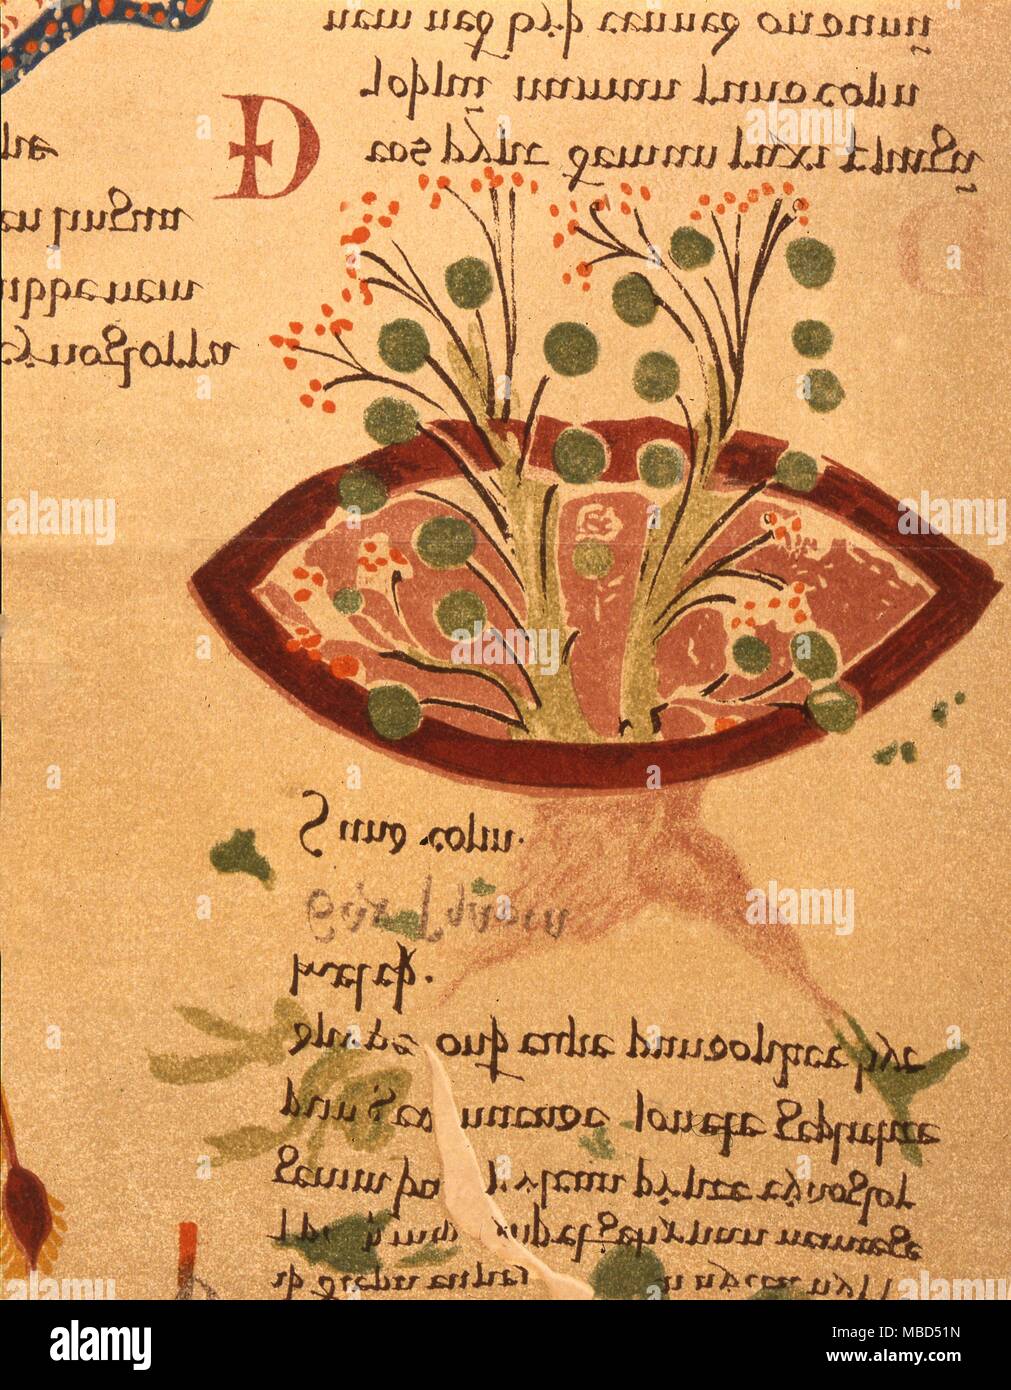 Herbal, saxifraga granulata, Detalle de un anglosajón herbal, c.1050 AD, el 'herbario y Medicina de Quadrupedibus'. De Cockayne 'Leechdoms'. Foto de stock